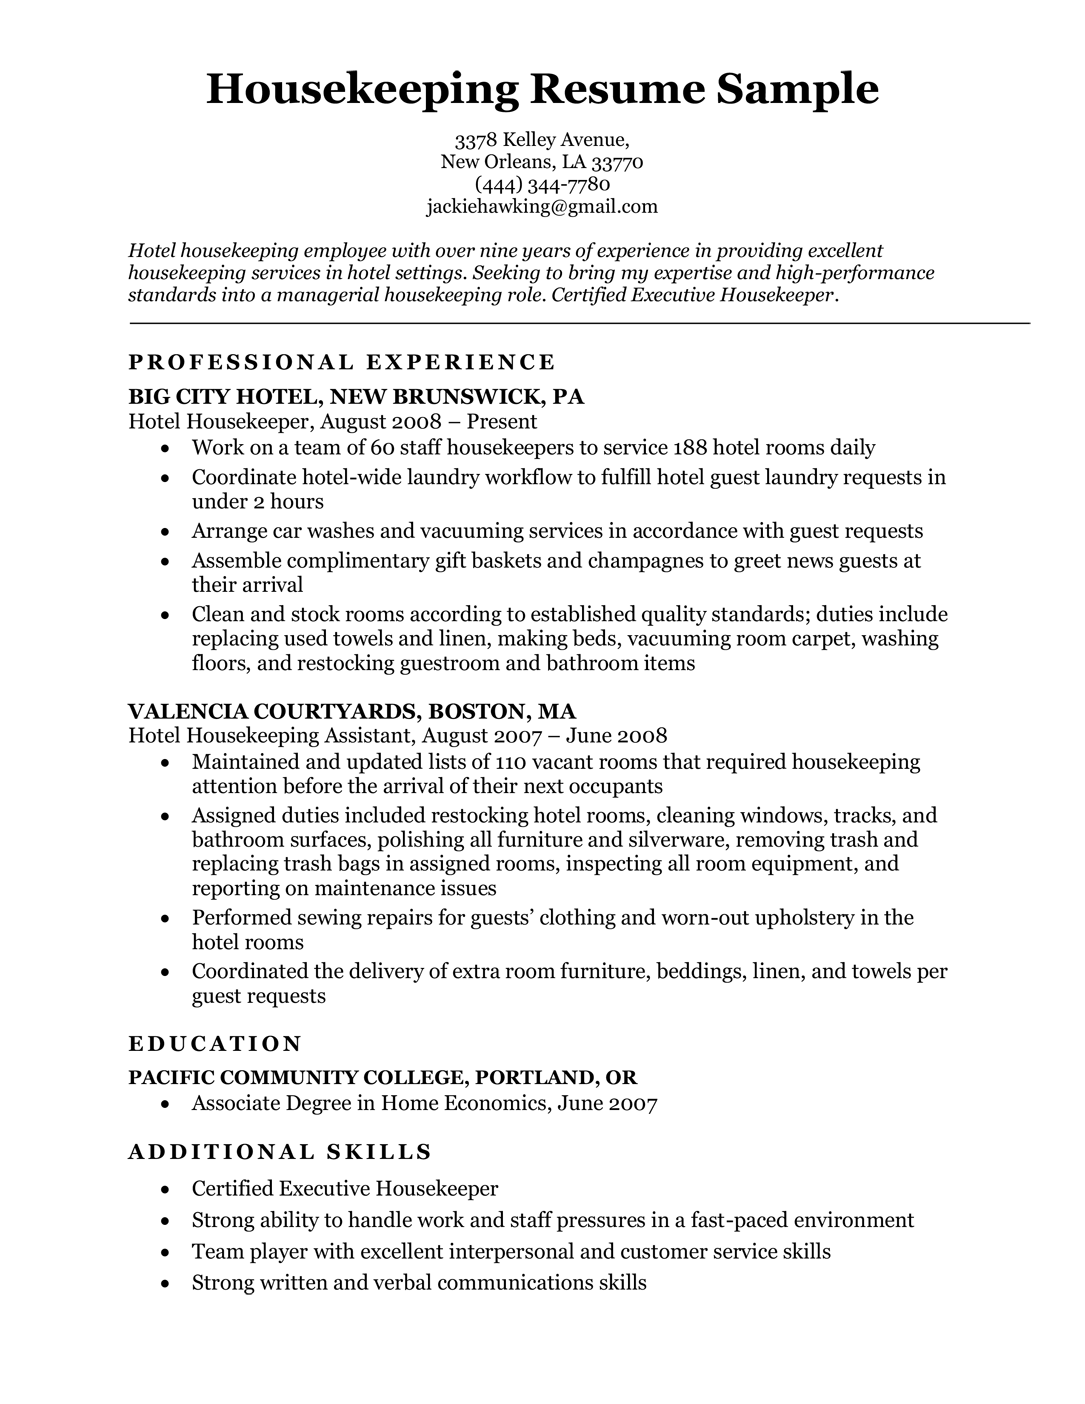 Housekeeping resume sample